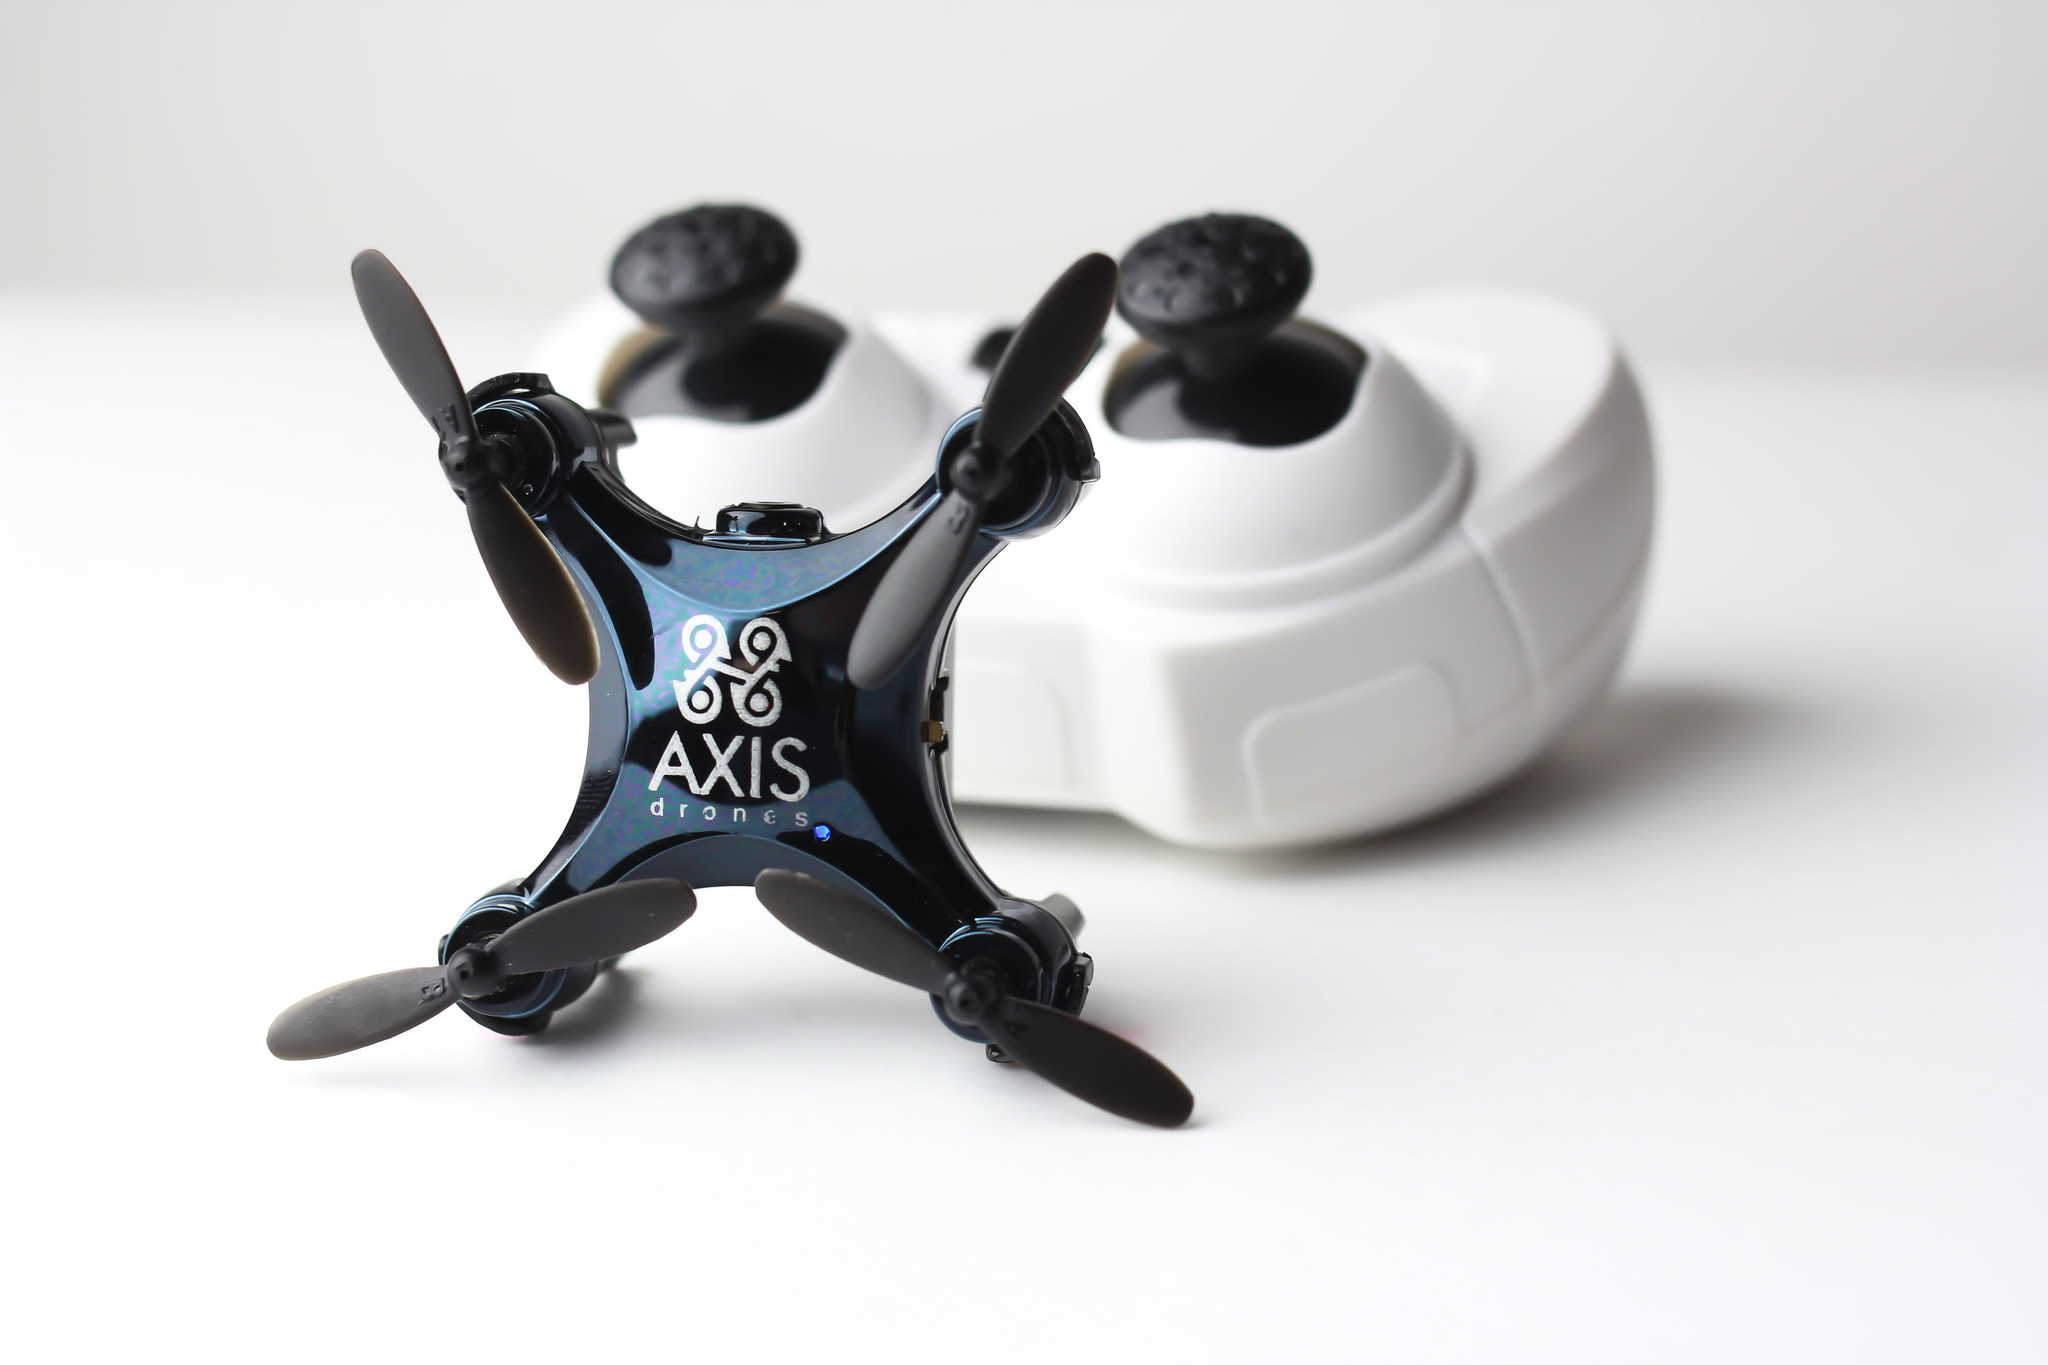 Axis Vidius nano-drone with controller